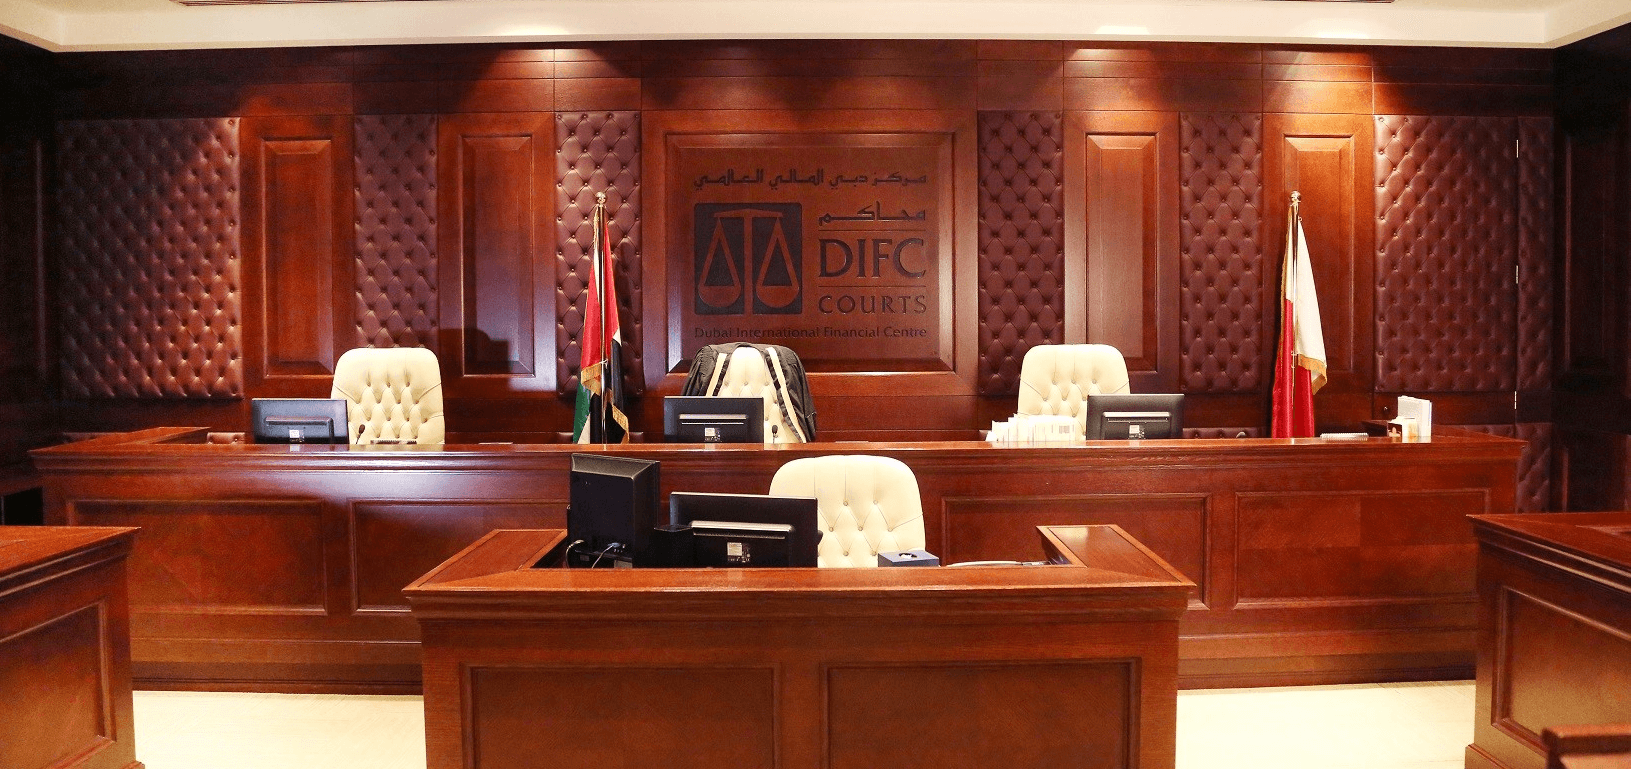 leyes laborales DIFC Dubai vivirendubai